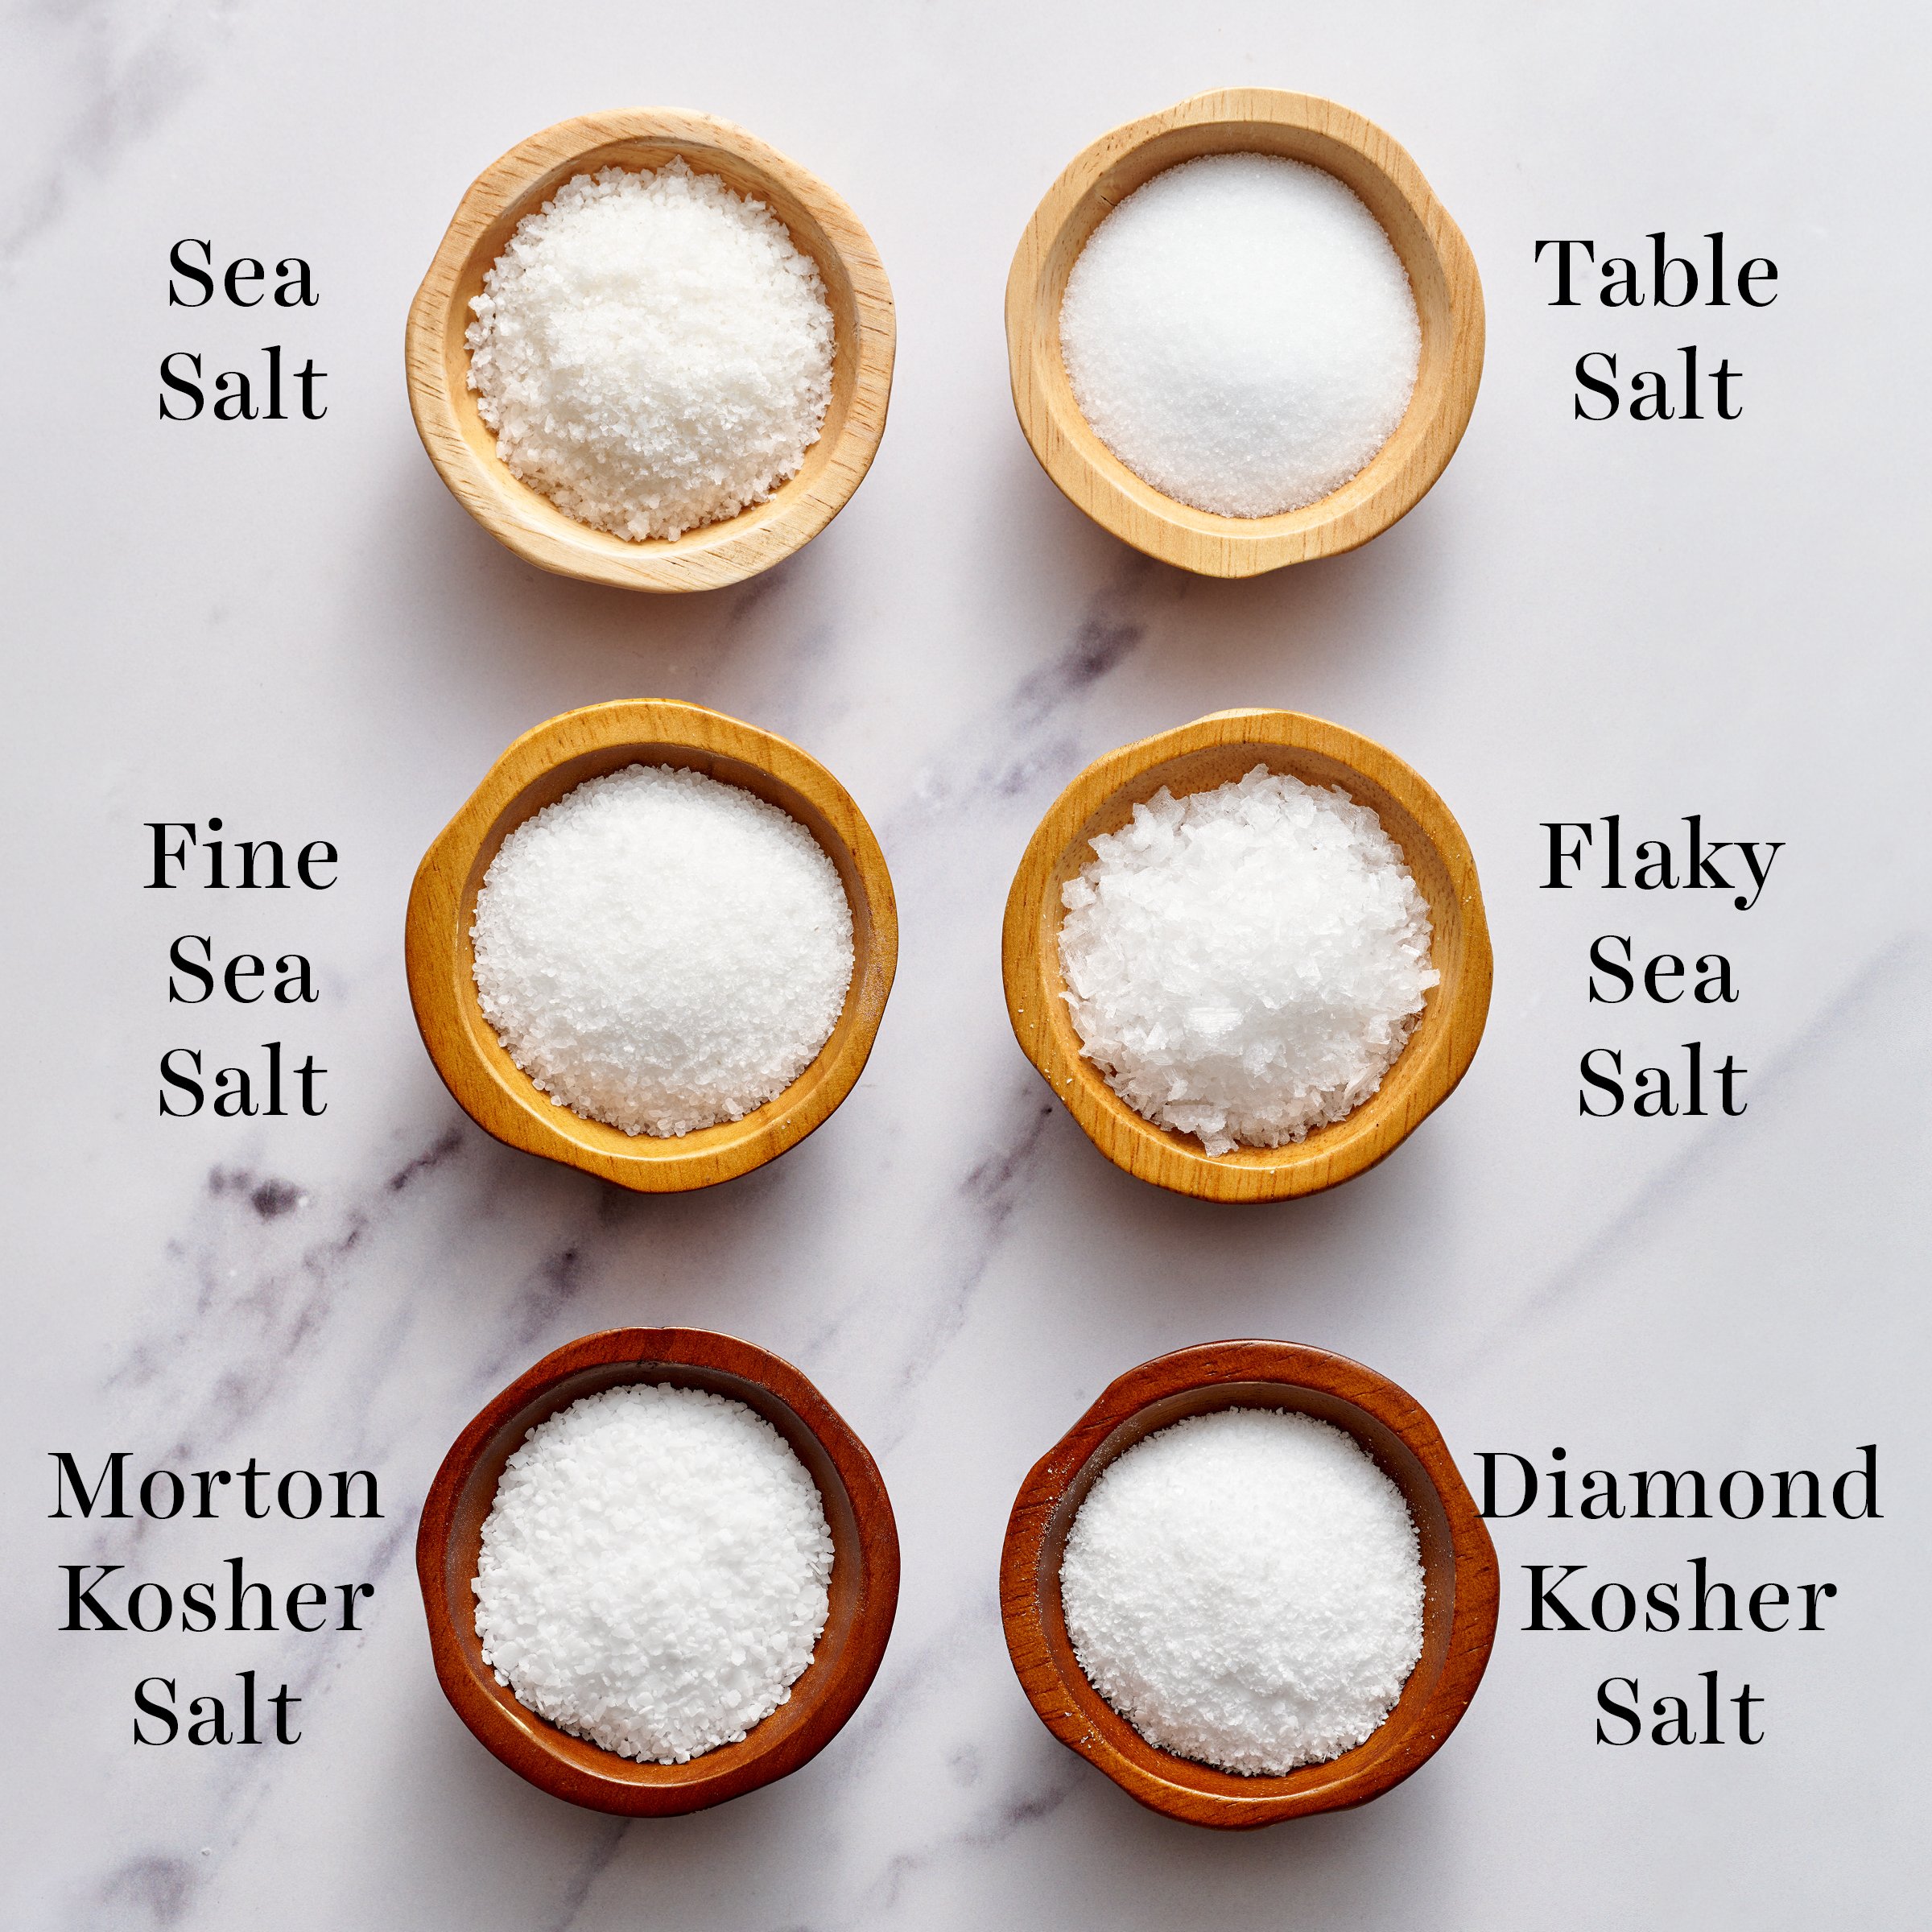 Table Salt Vs Sea Salt Vs Kosher Salt 